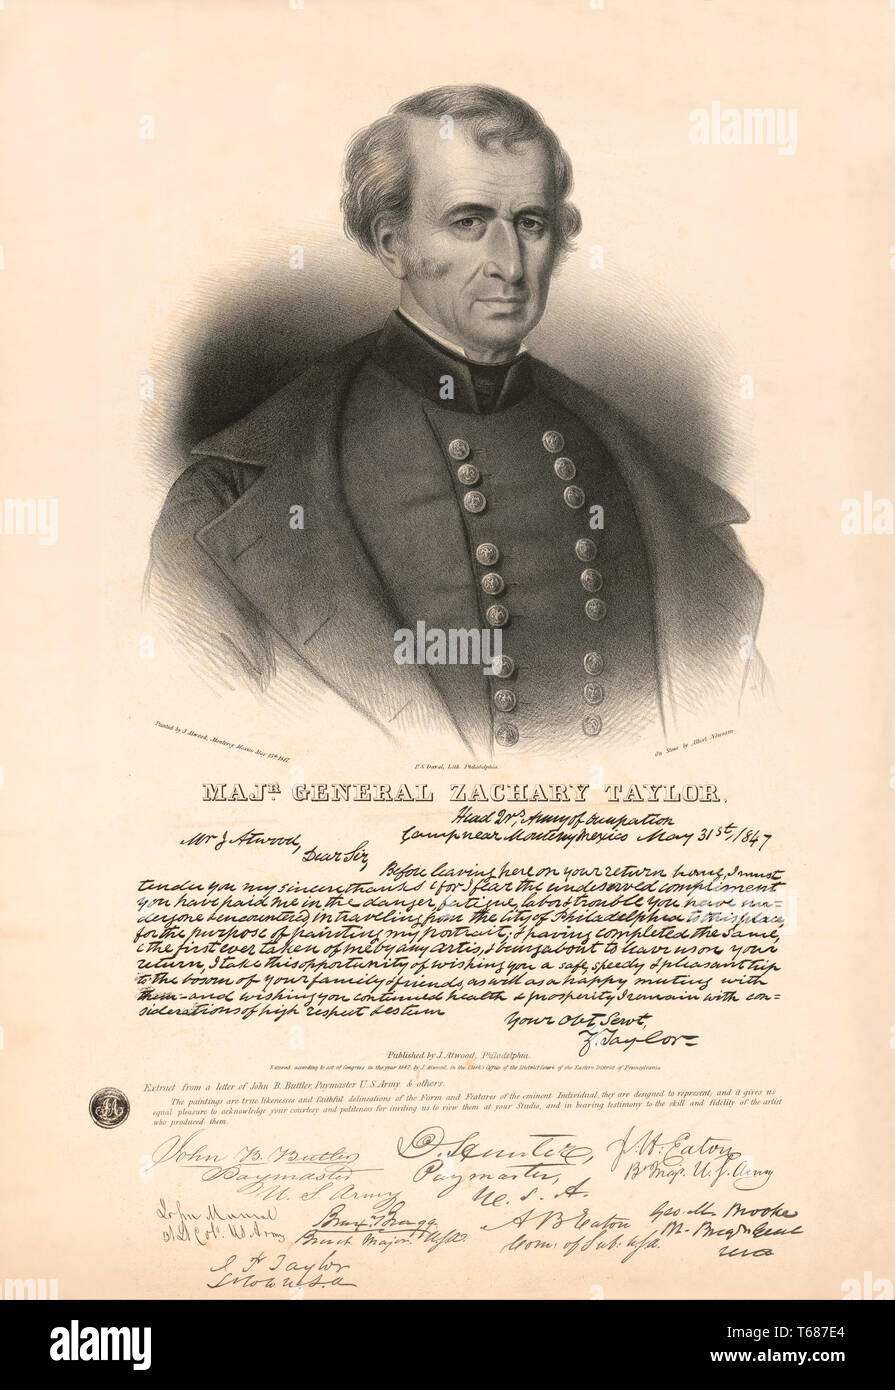 Maj. General Zachary Taylor, J. Atwood, Lithographie von P.S.: Duval, von J. Atwood, Philadelphia, 1847 veröffentlicht, lackiert Stockfoto